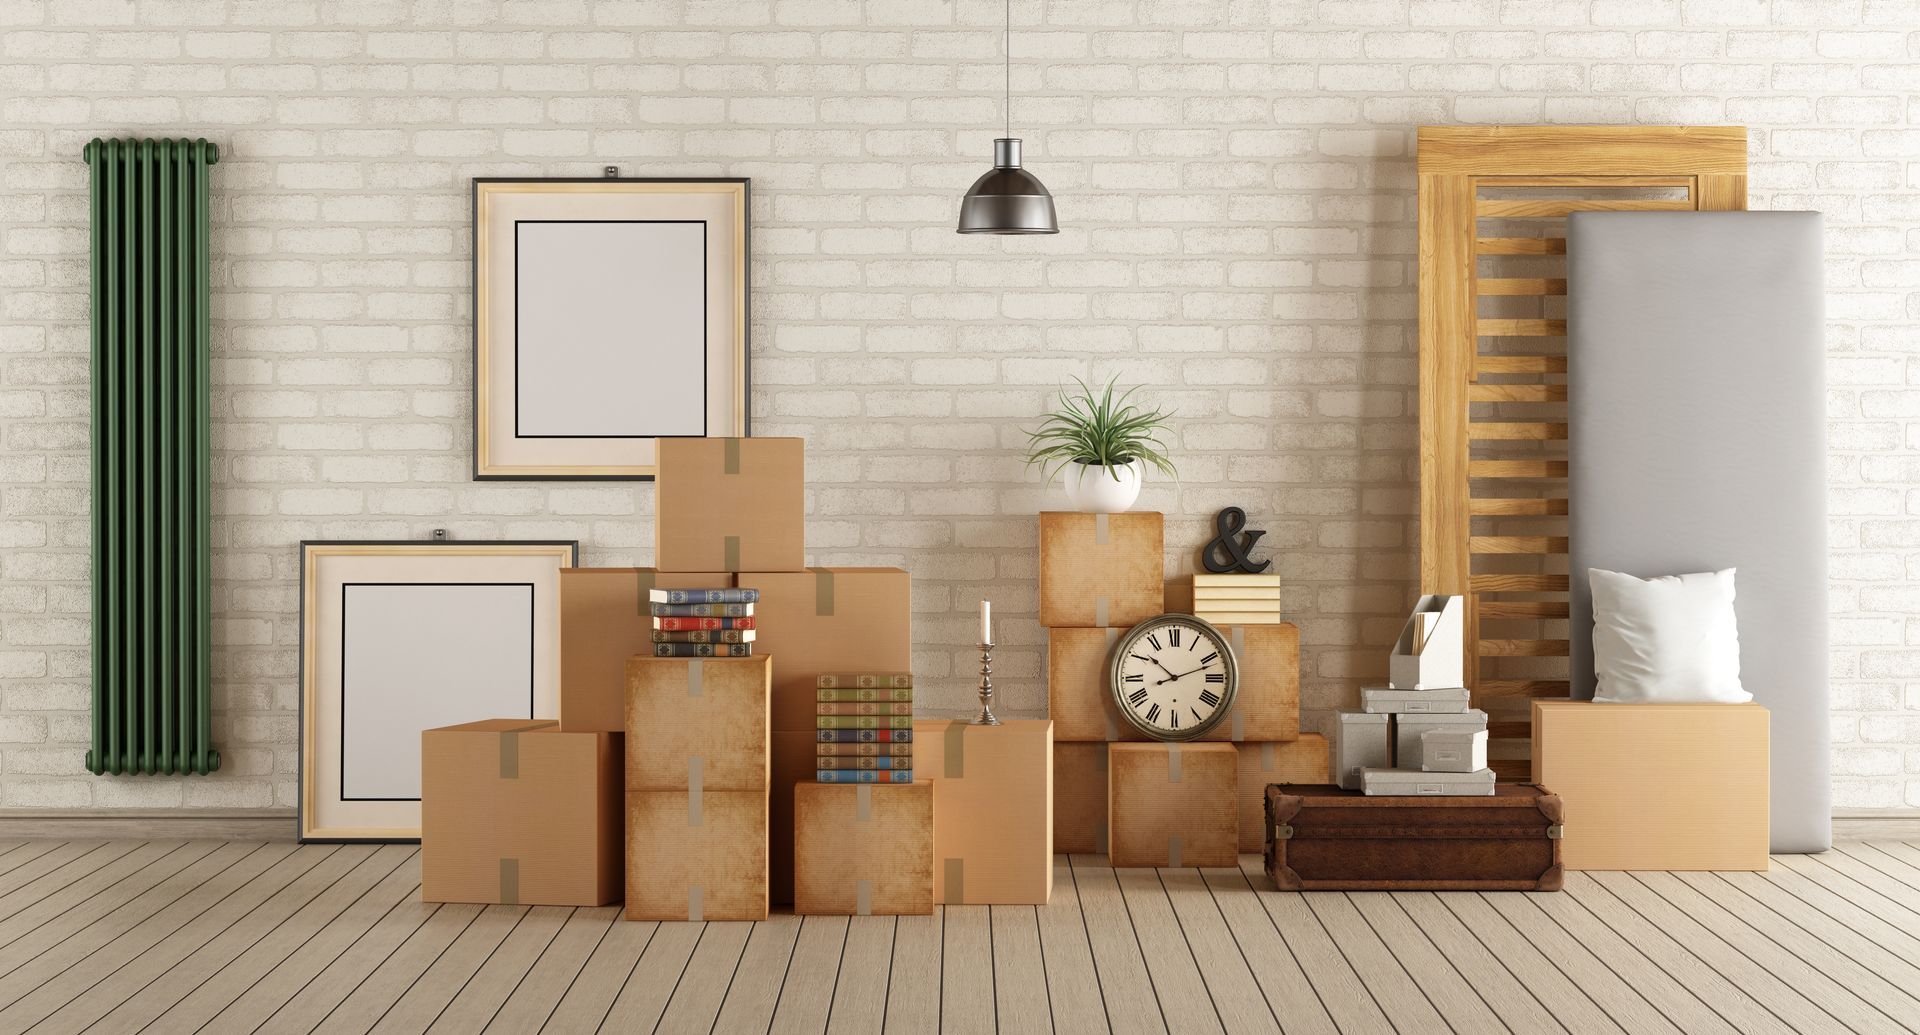 trasloco di mobili e oggetti in una nuova casa